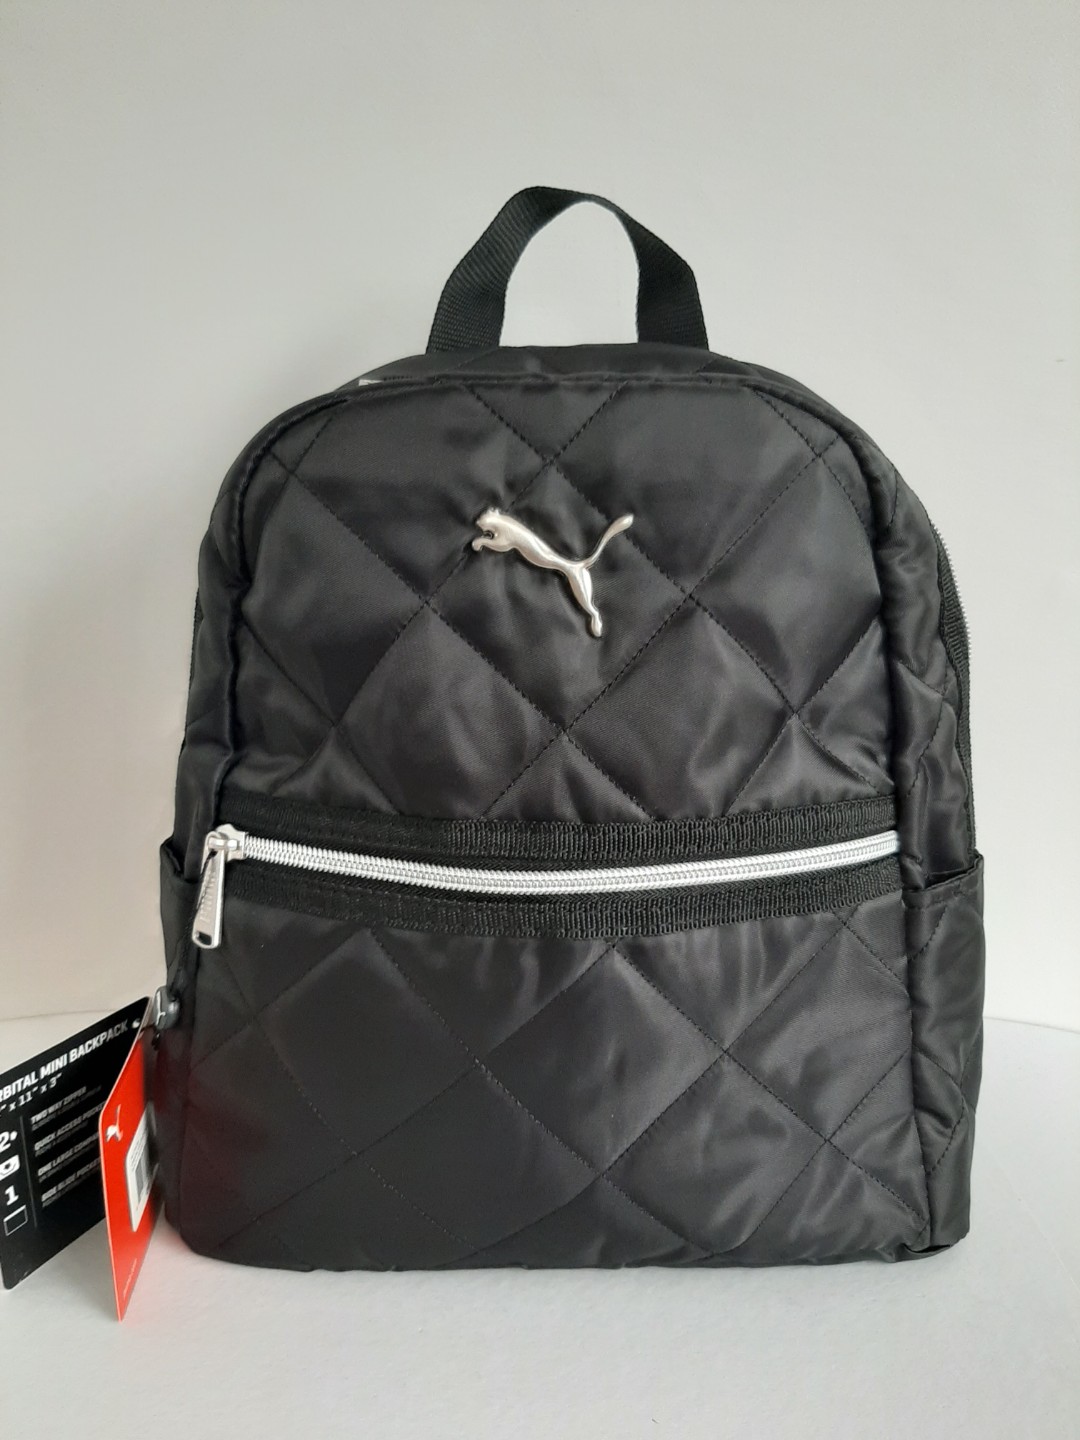 puma orbital mini backpack